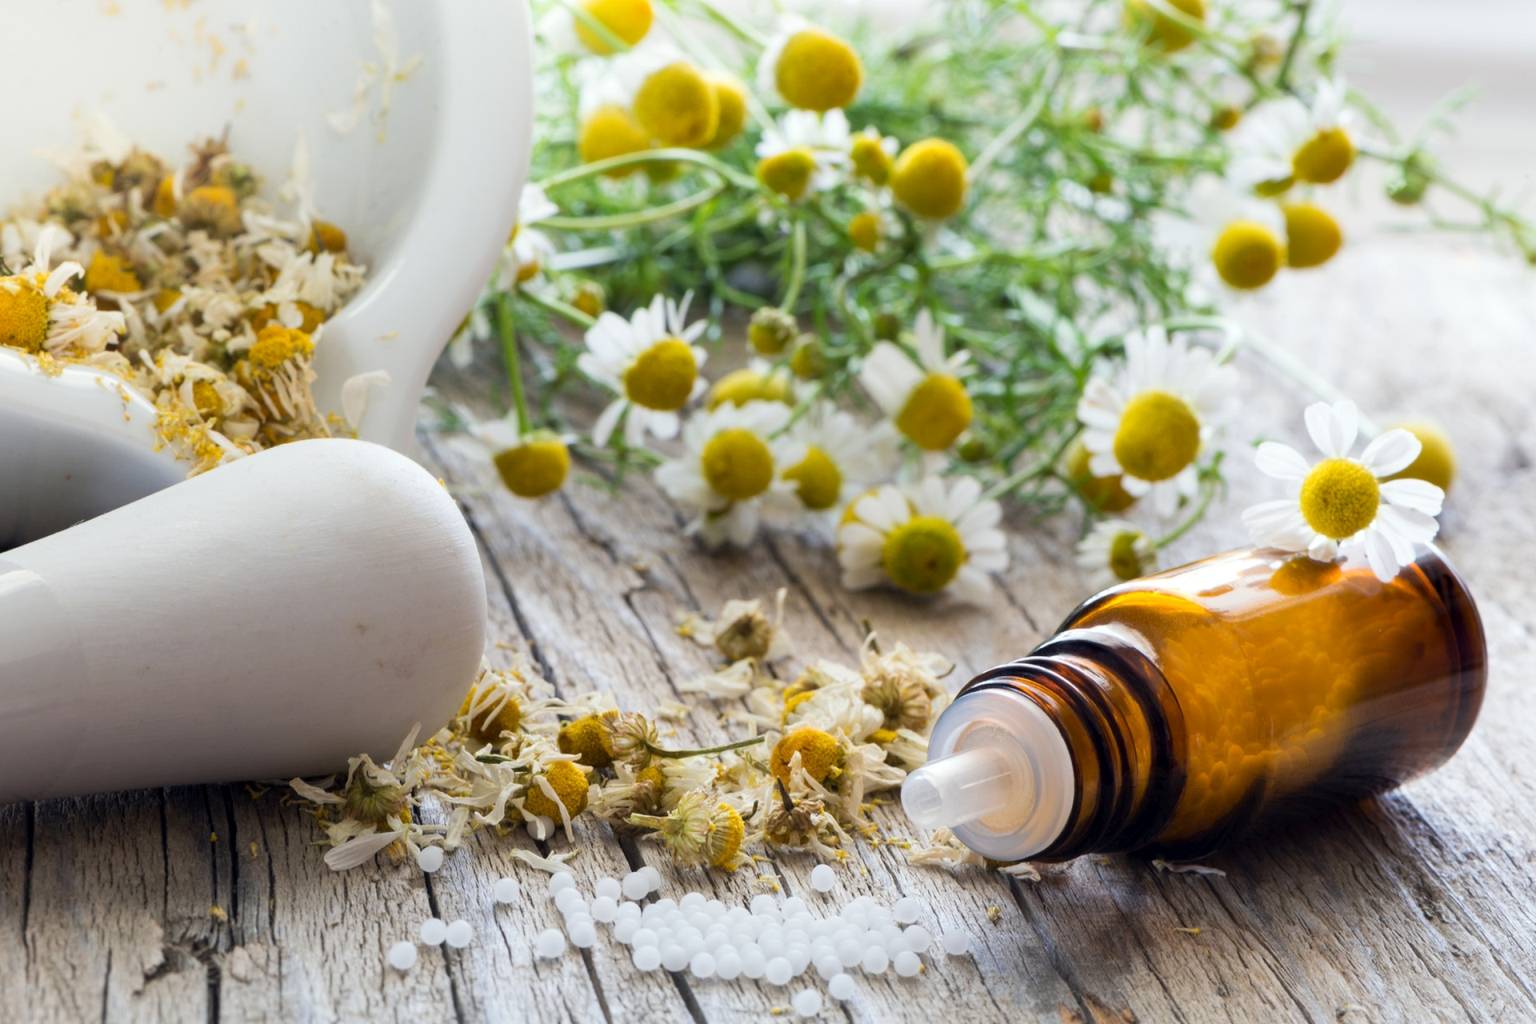 Leczenie traumy homeopatią. Jakie leki homeopatyczne pomogą poradzić sobie ze stresem traumatycznym? Fiolka leków leży obok białego moździerza i kwiatów rumianku.